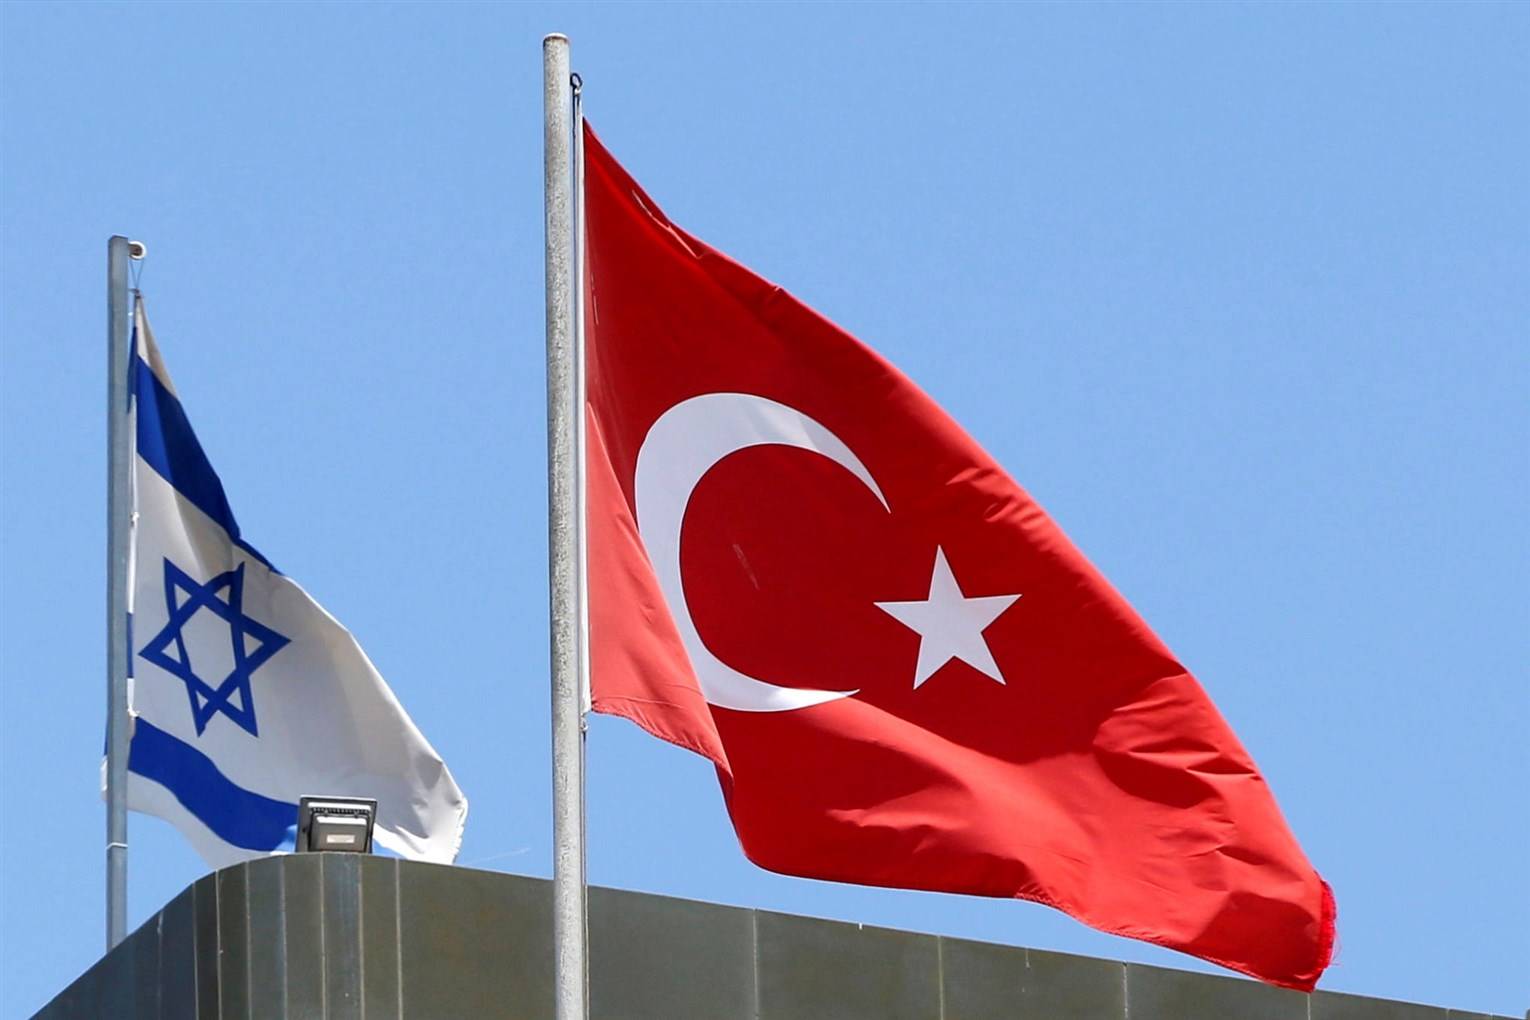 Türkiyə və İsrailin XİN başçıları arasında TELEFON DANIŞIĞI – 13 ildən sonra